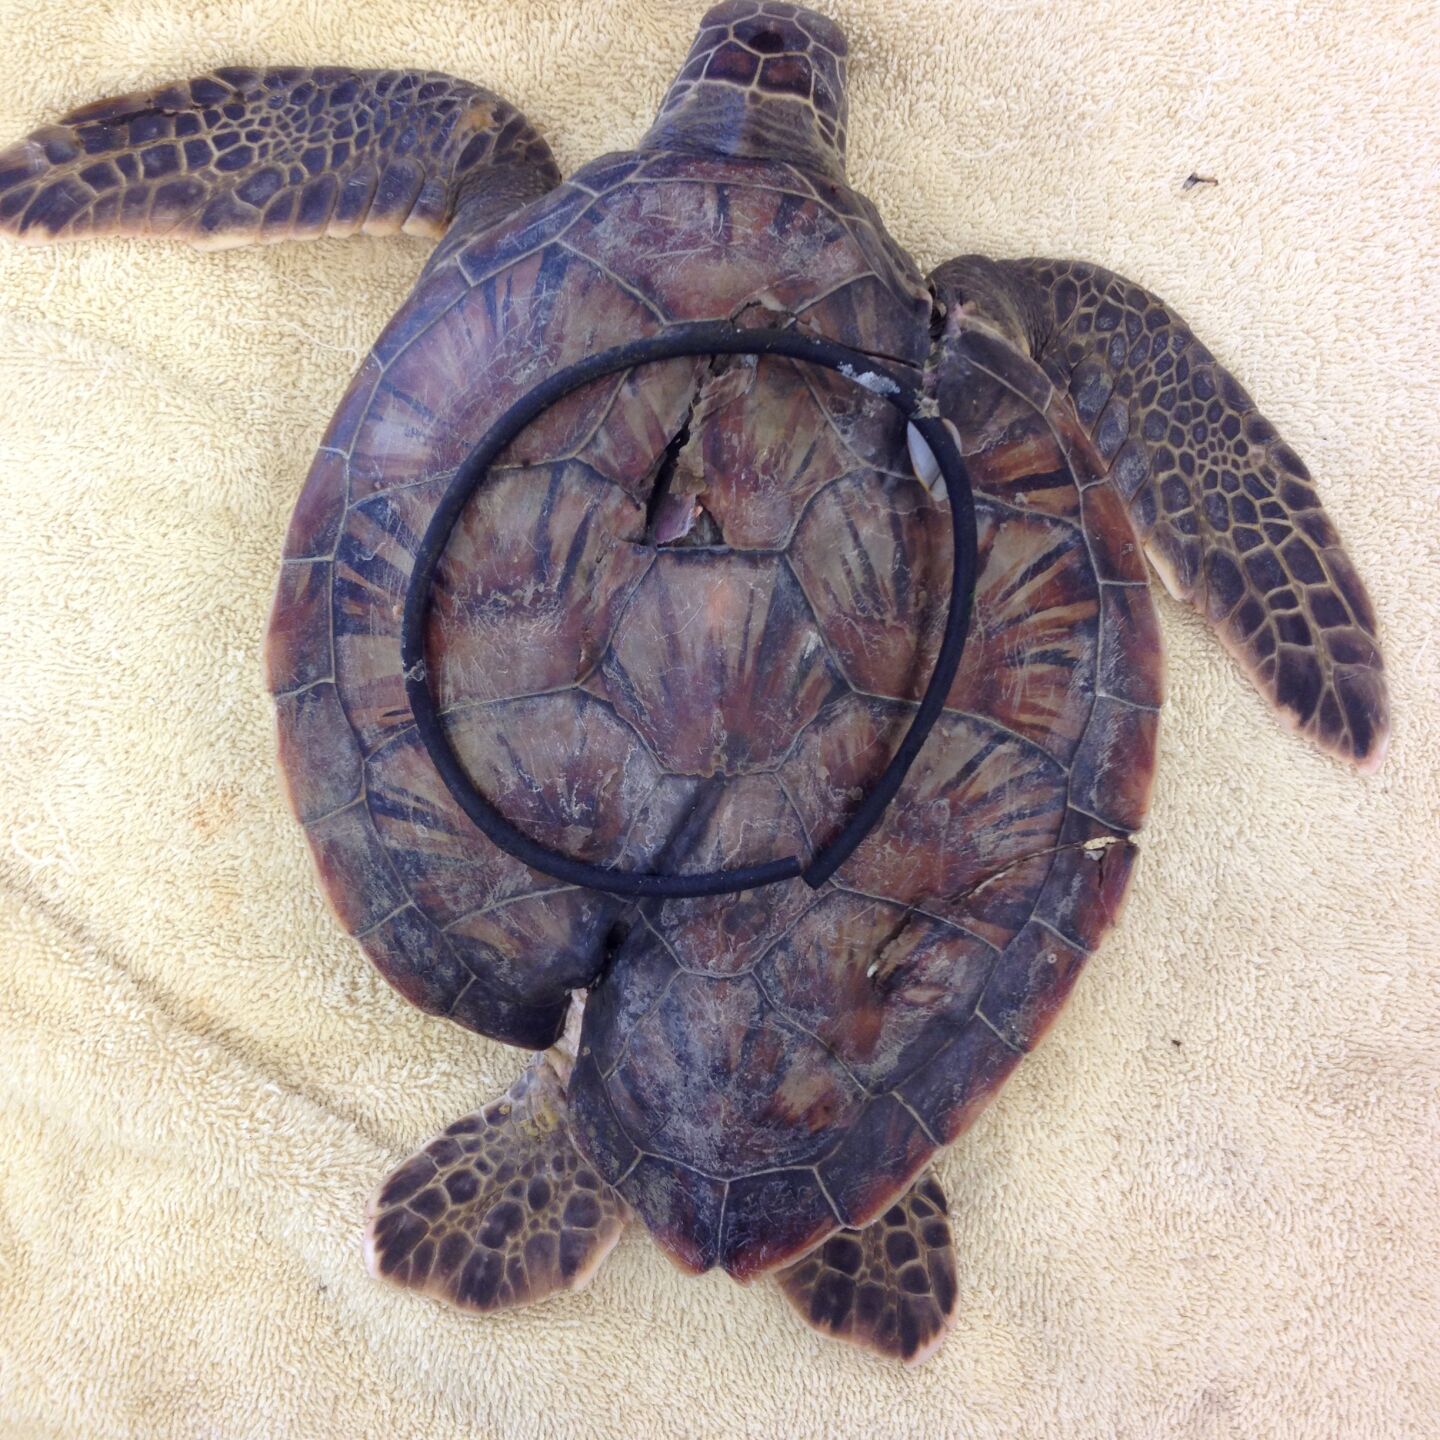 Sea turtles get caught in plastic six-pack rings... -